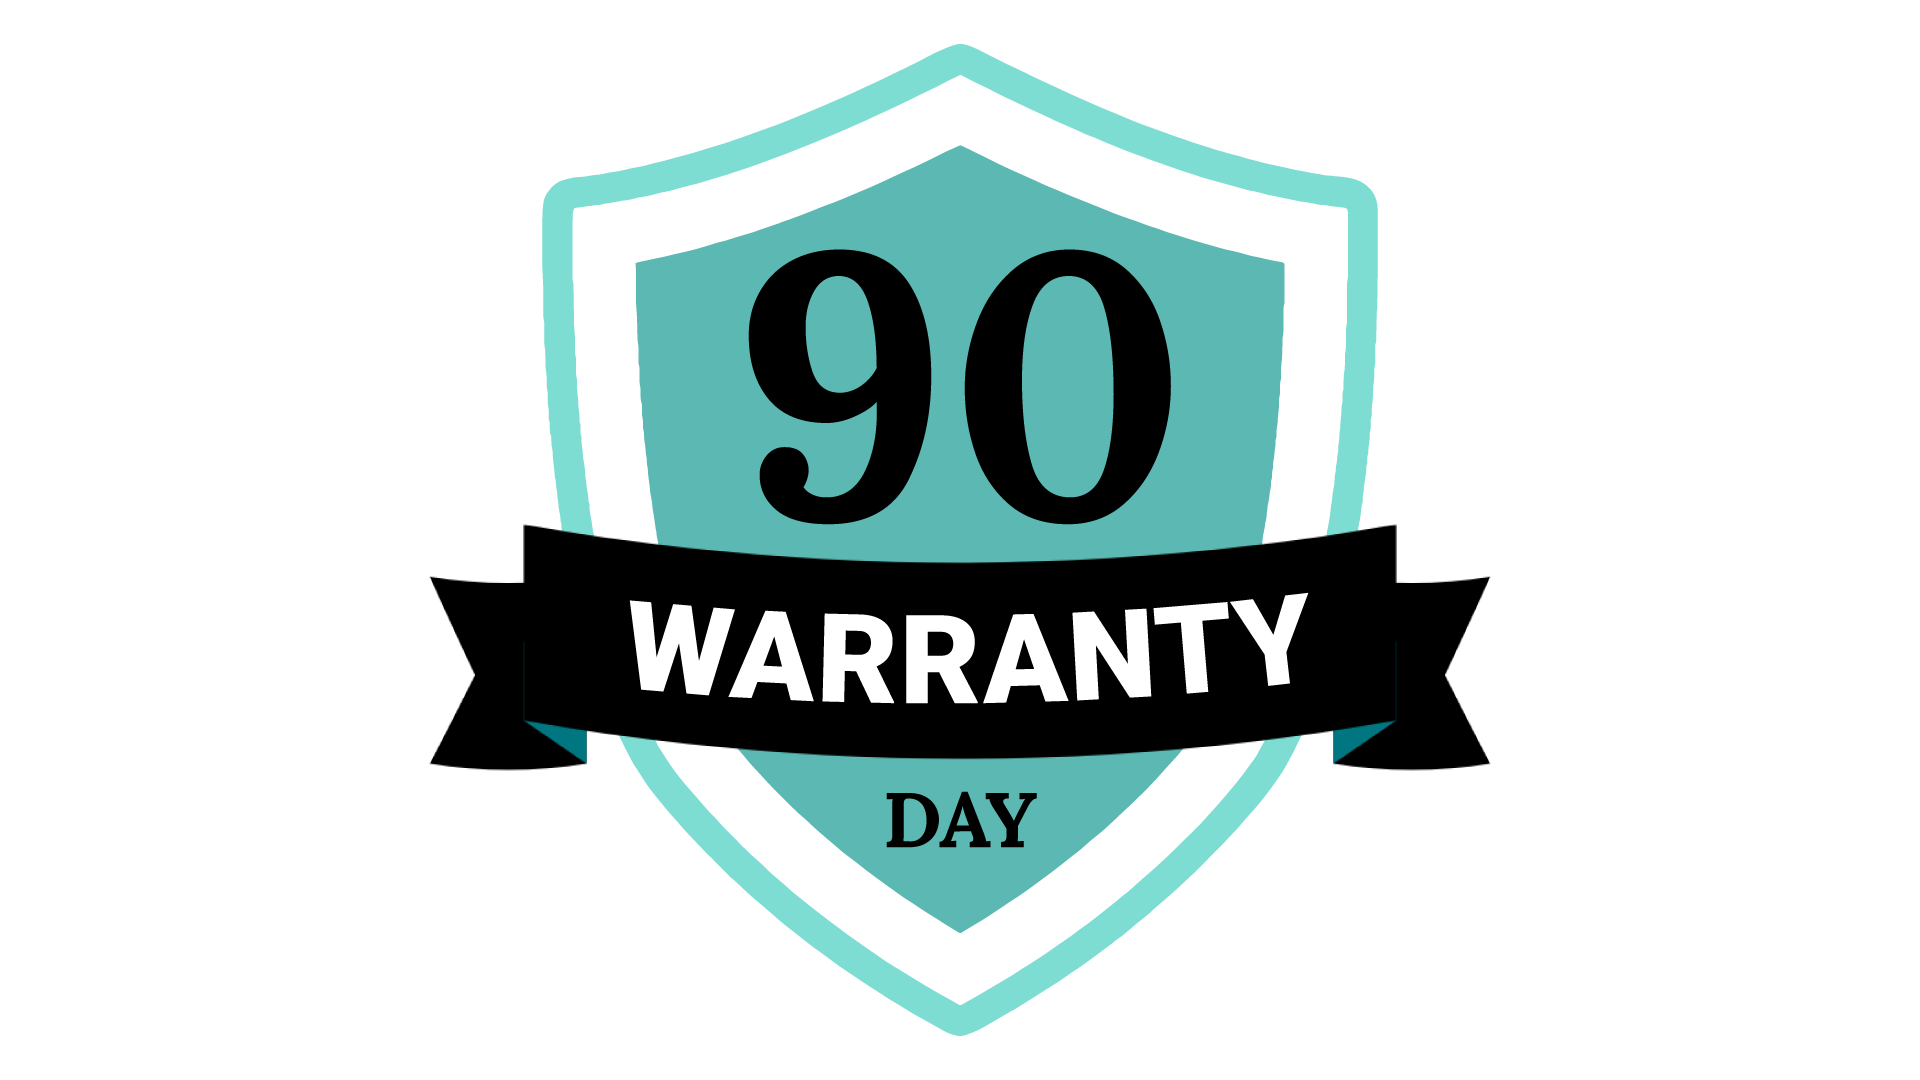 90 day warranty